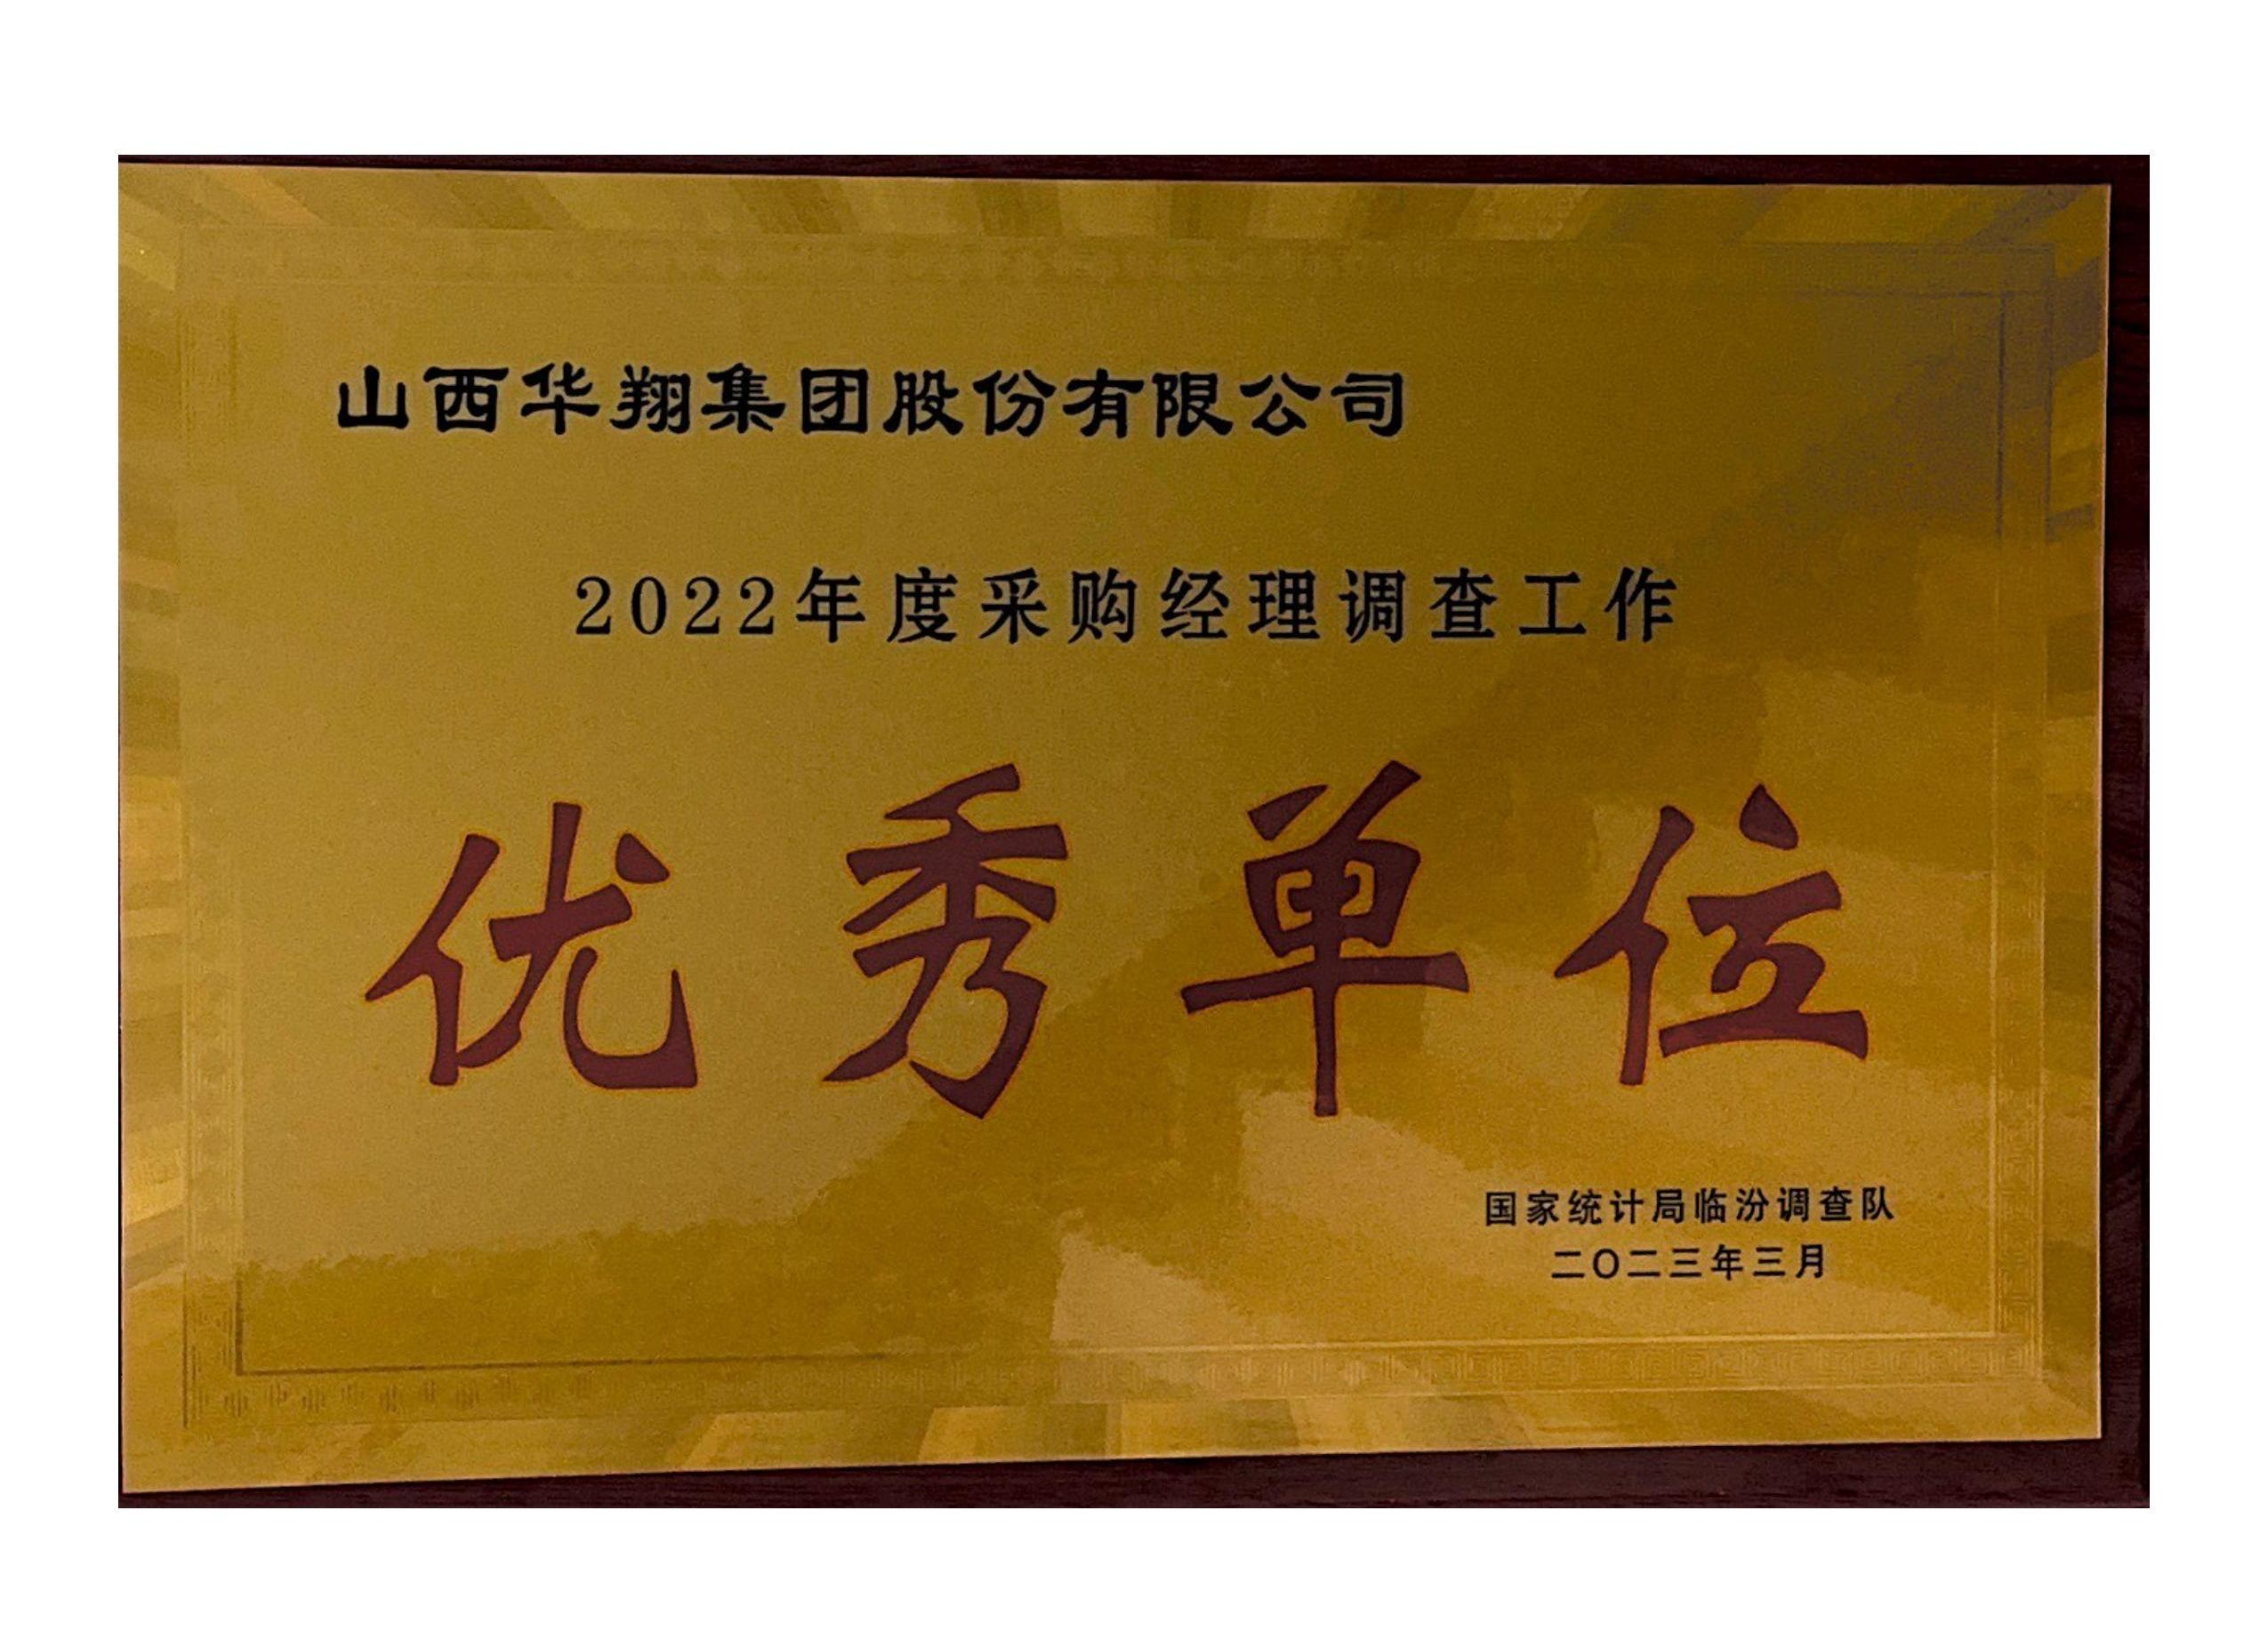 华翔荣获2022年度采购经理调查工作 “优秀单位”荣誉称号